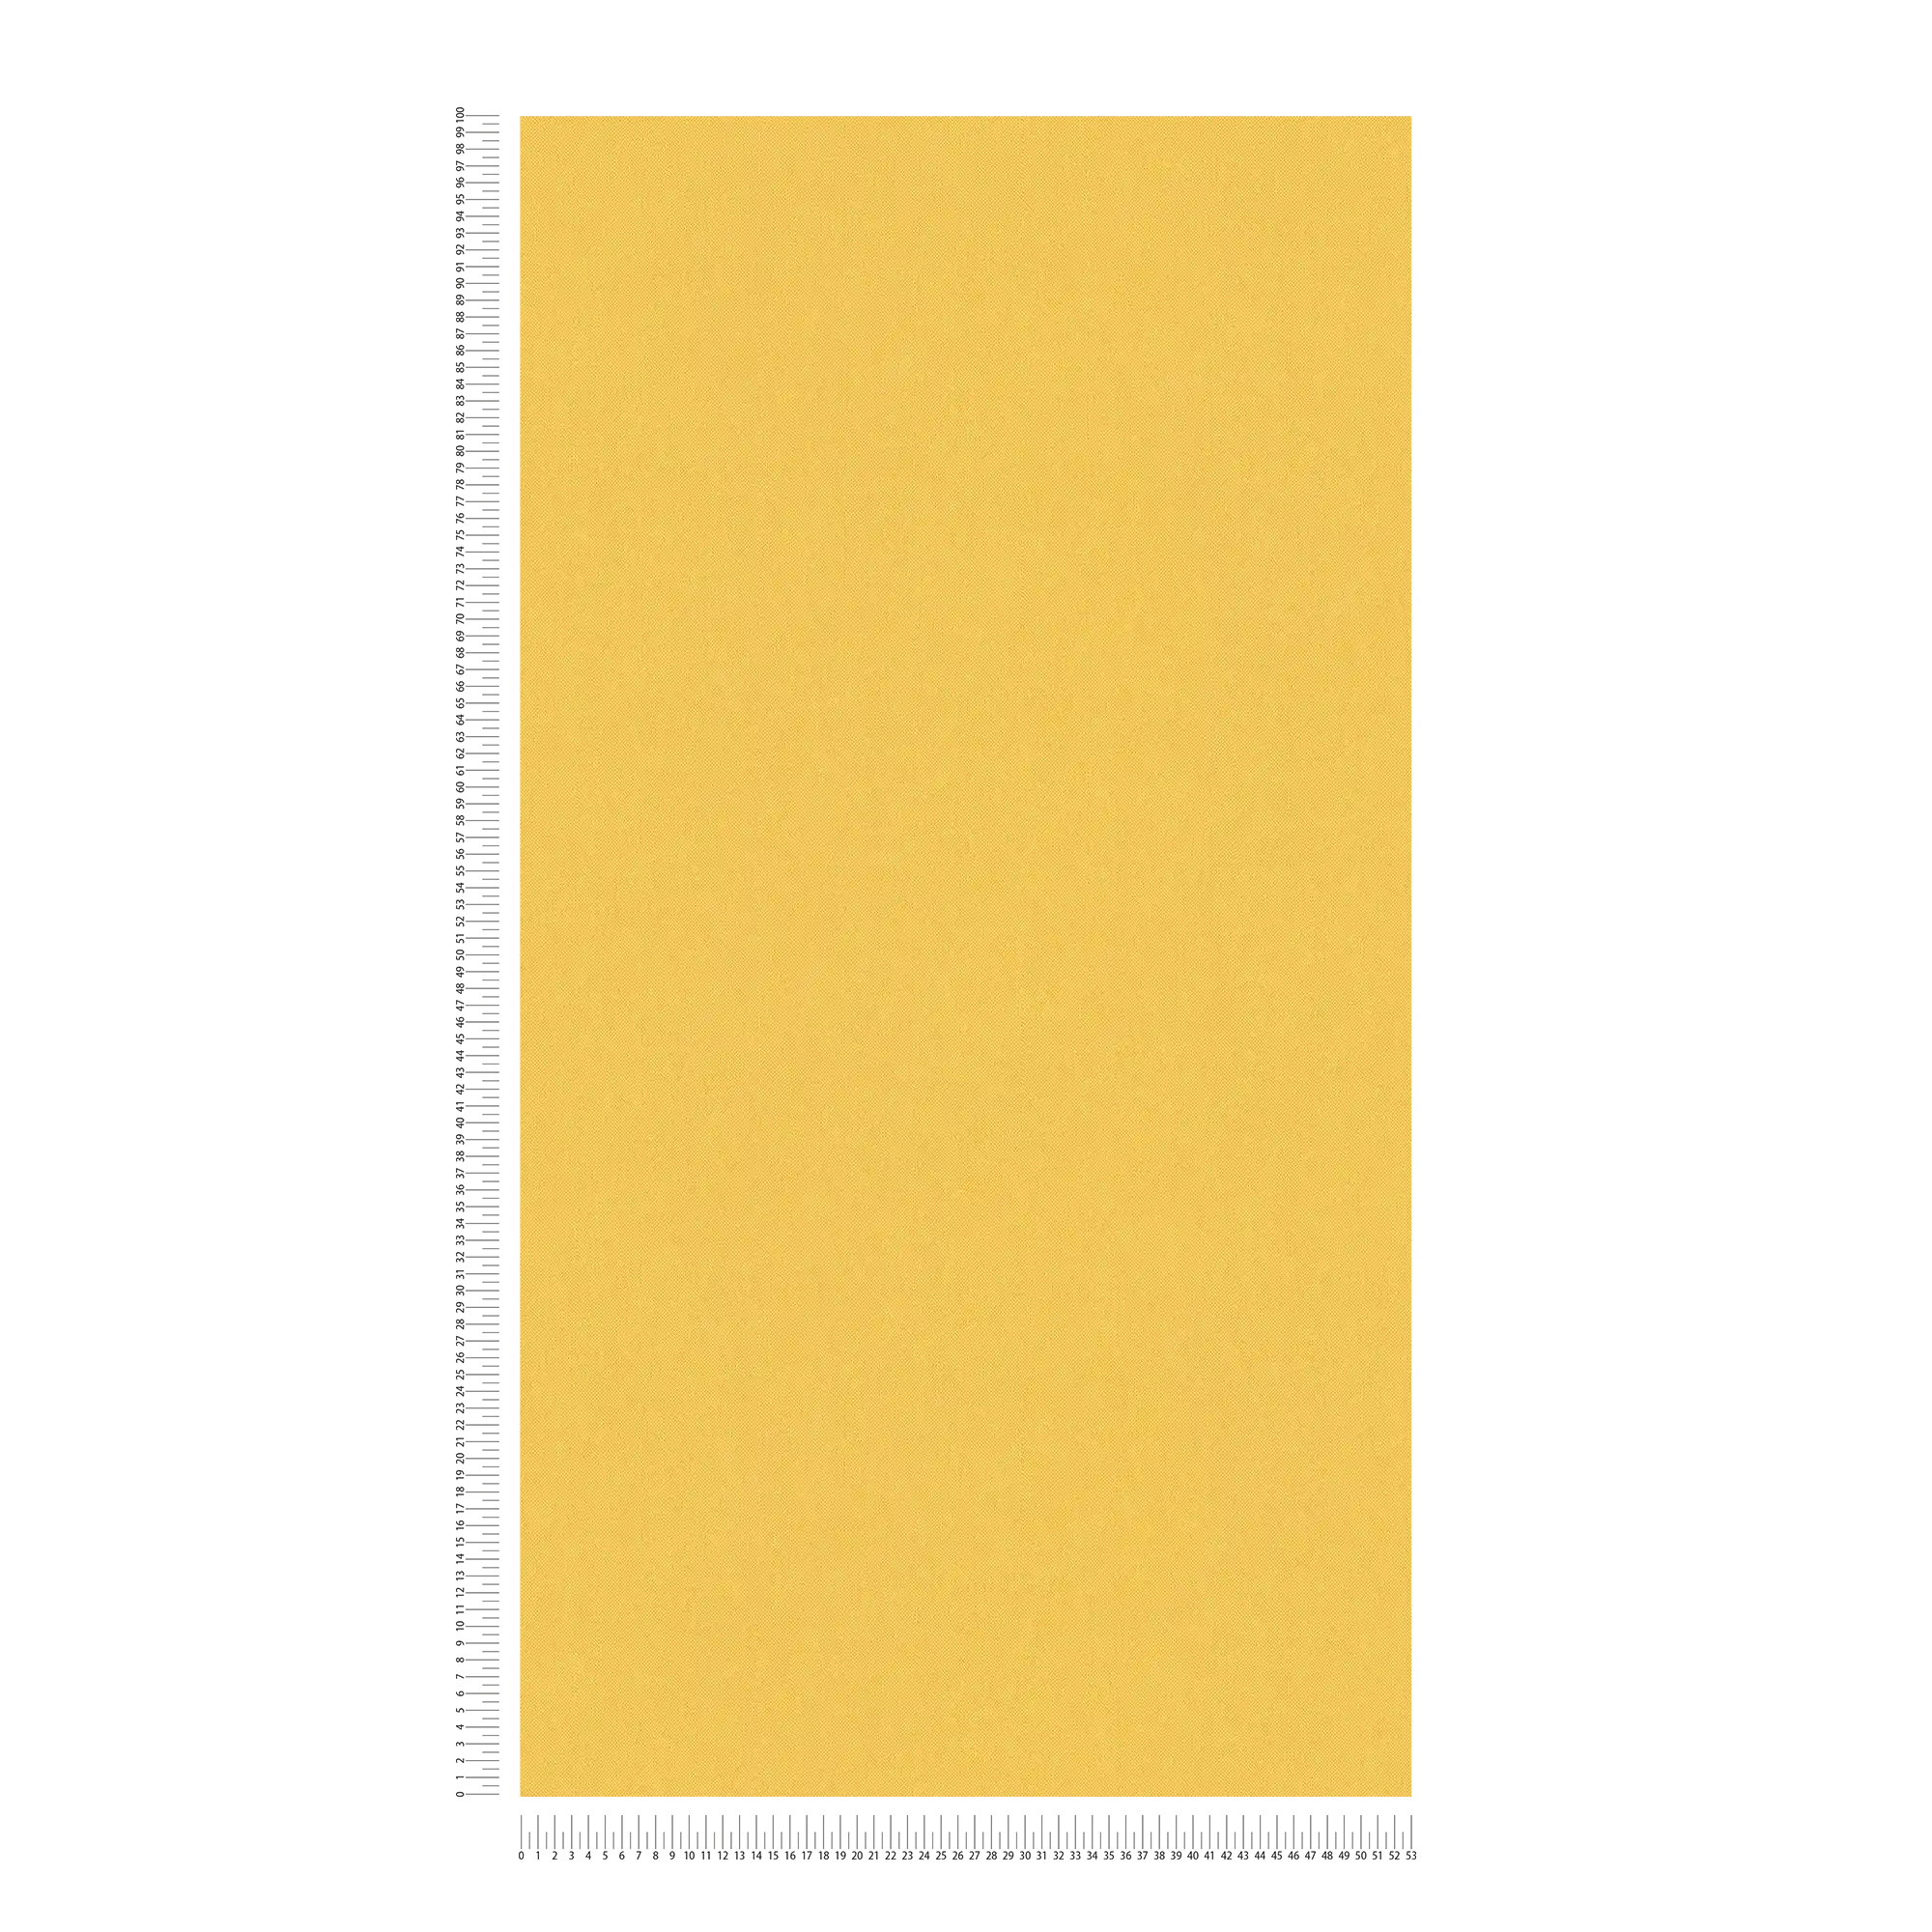             behang mosterdgeel uni met textielstructuur - geel
        